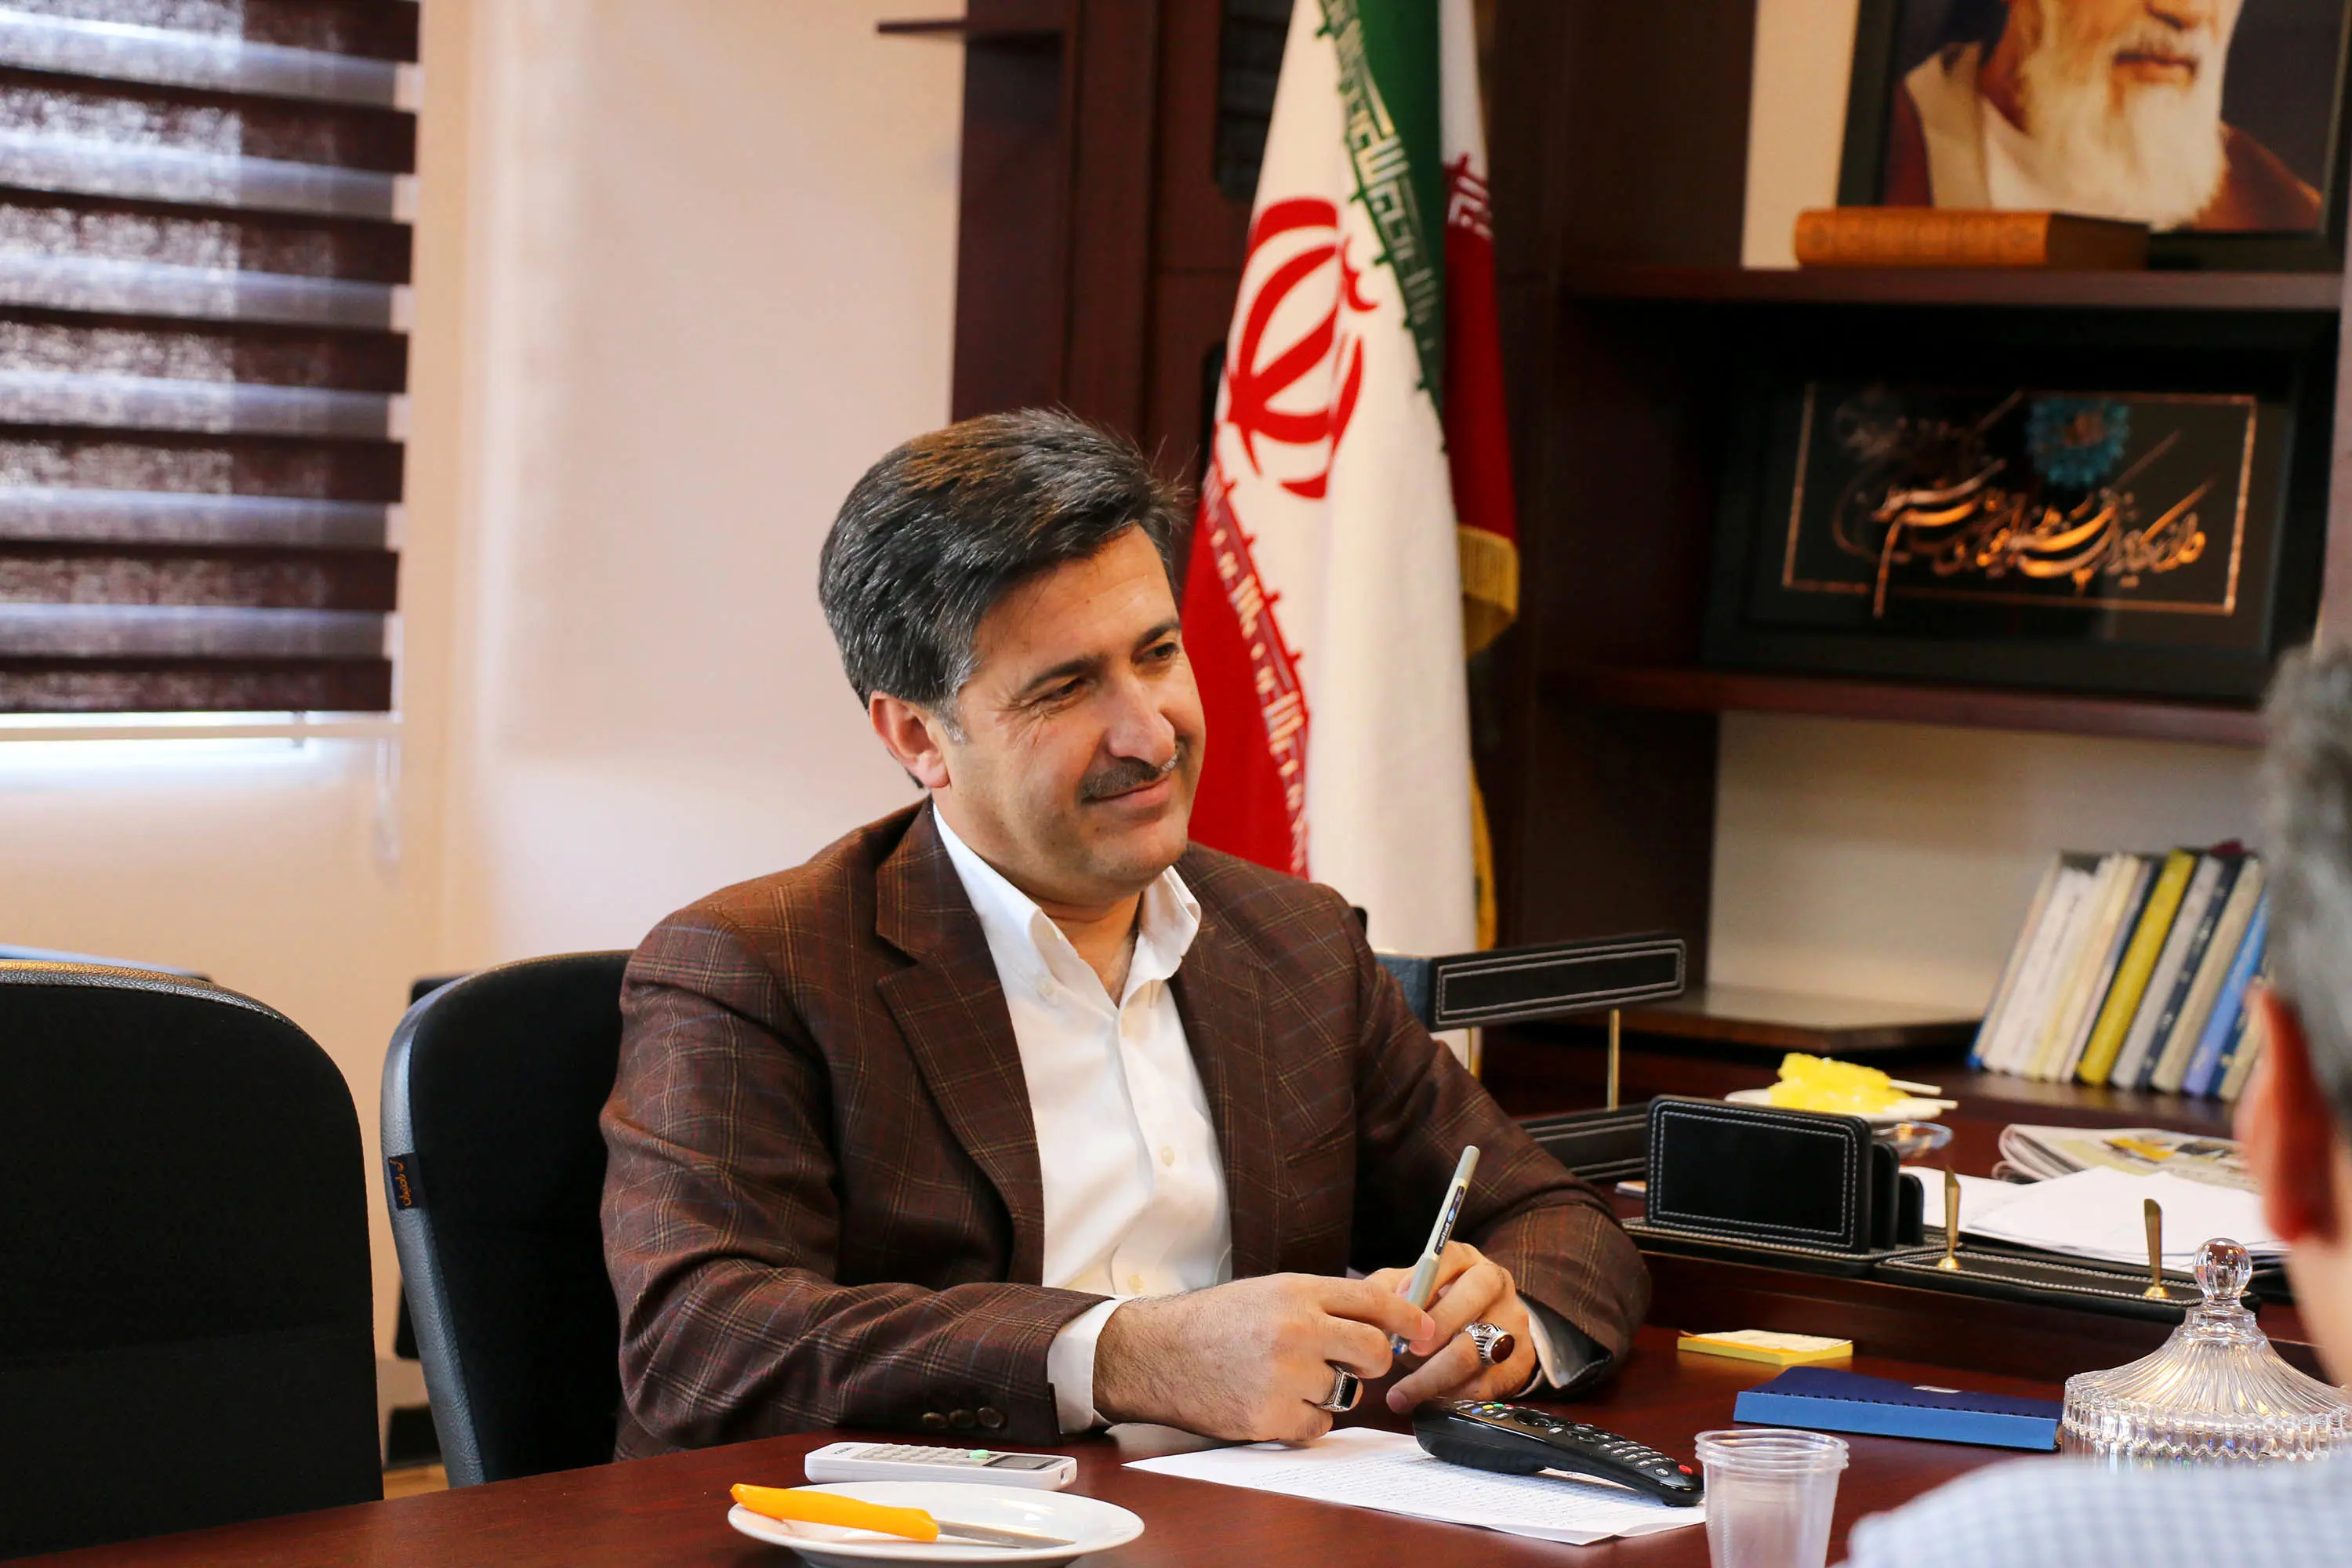 پیام تبریک مدیر کل راهداری فارس به مناسبت روز خبرنگار